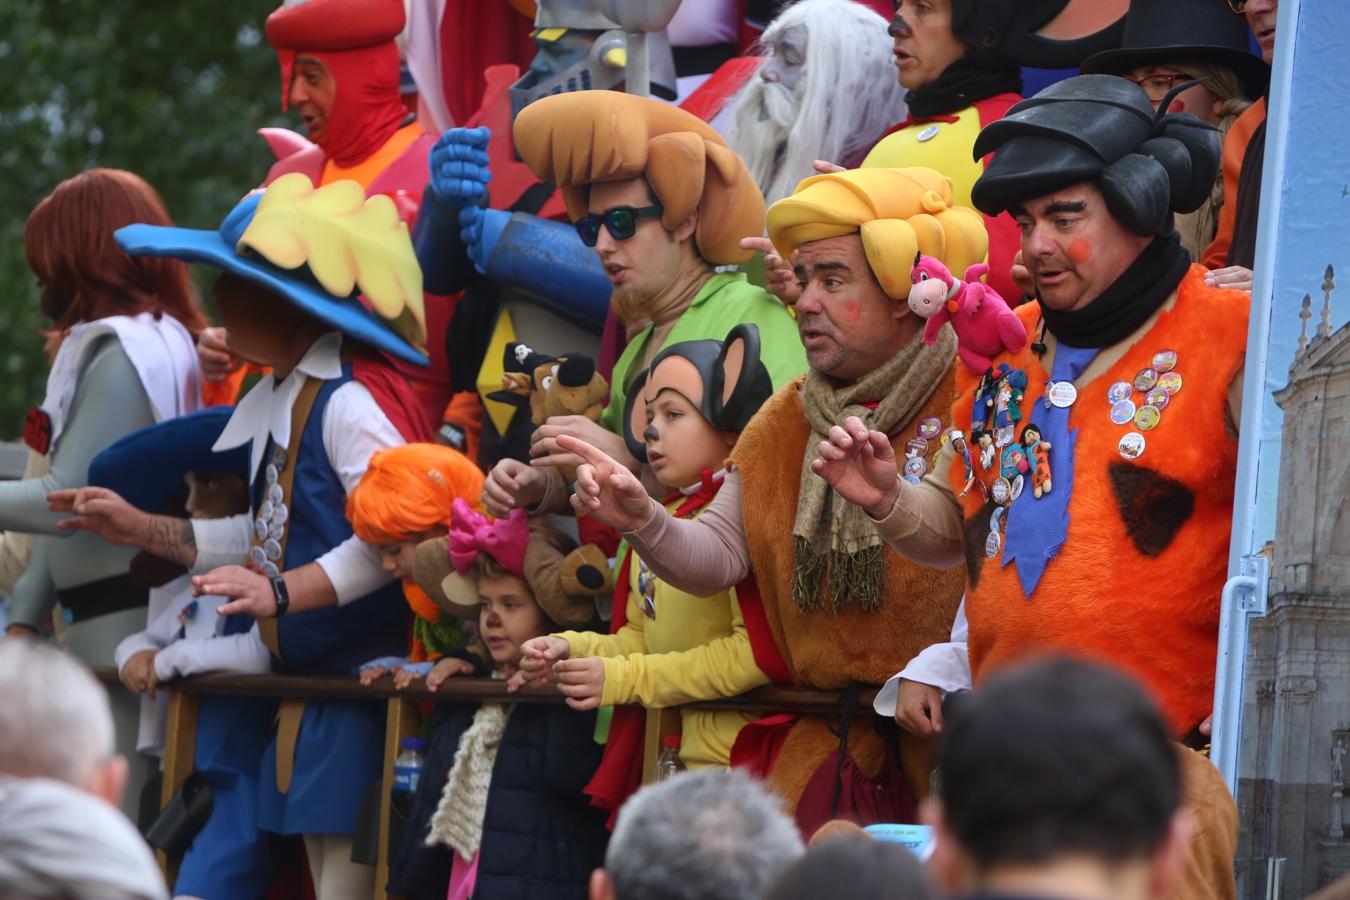 FOTOS: El Lunes más gaditano y carnavalero del año en Cádiz